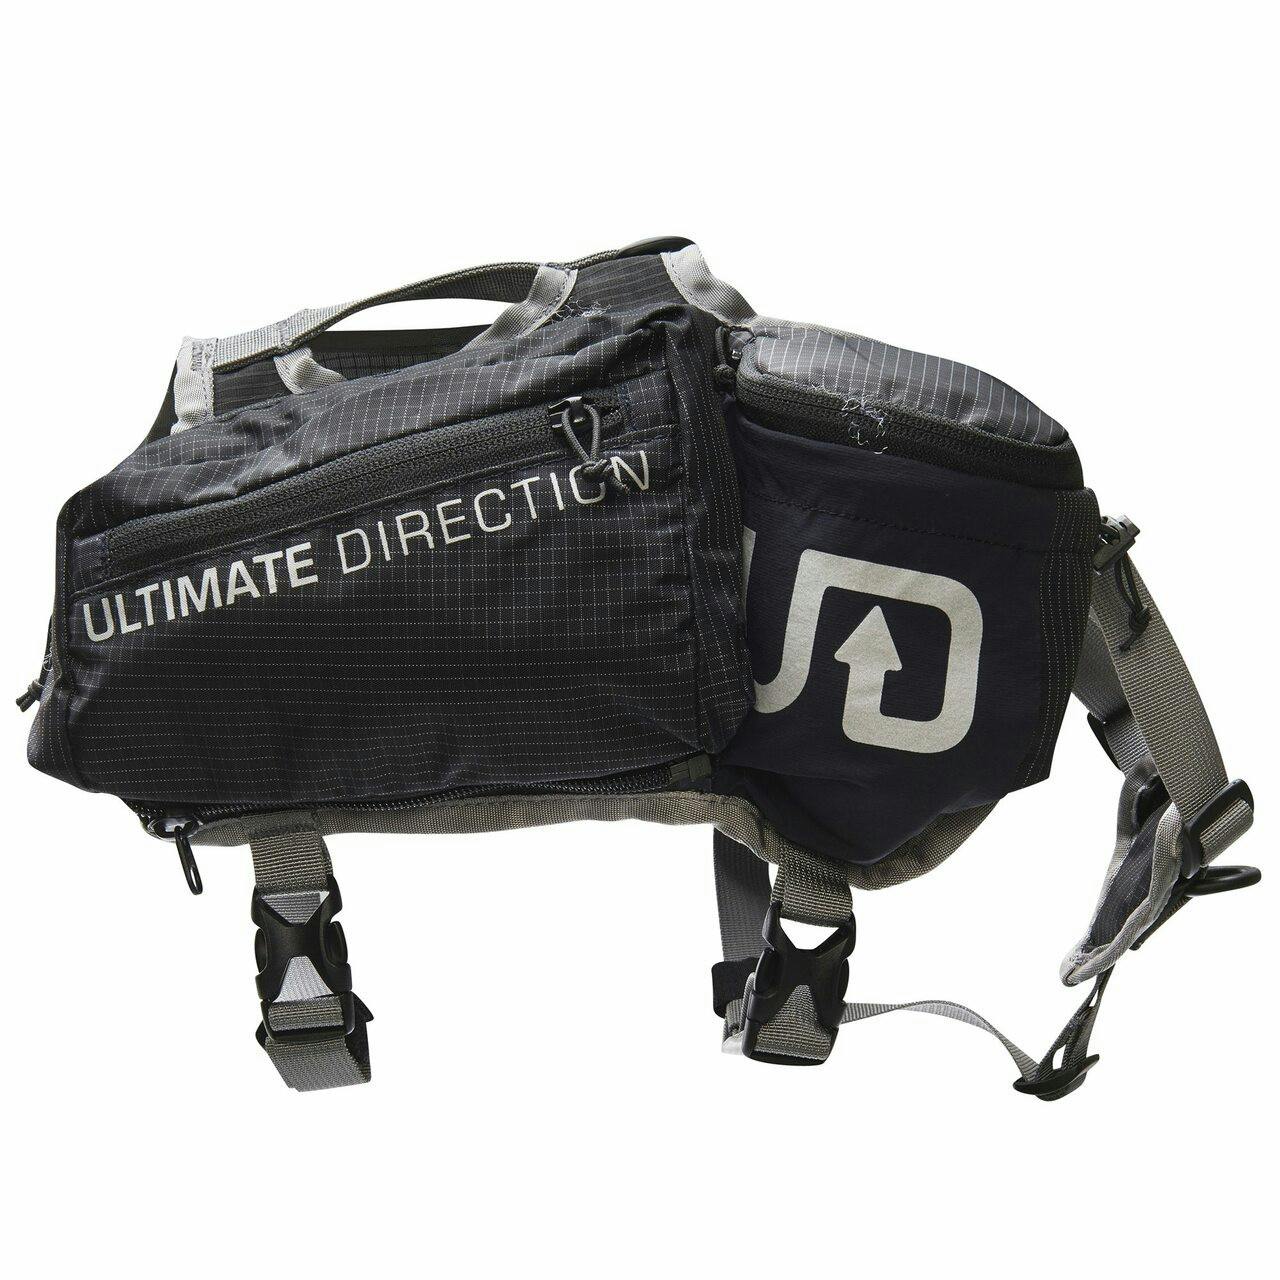 Ultimate Direction - Dog Vest - MD Black